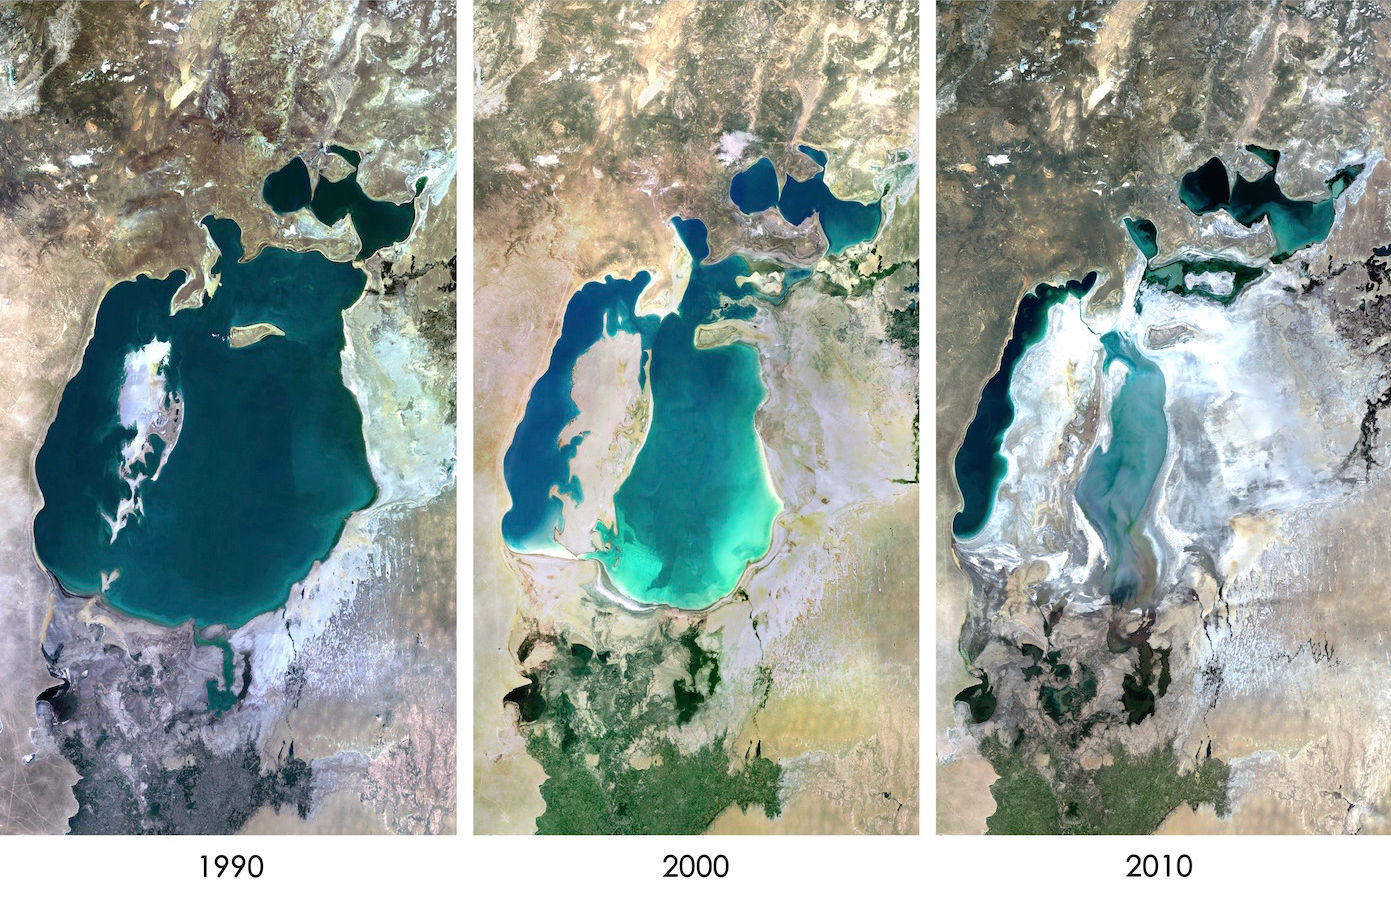 Արալյան ծովի չորացման ընթացքը ցույց տվող՝ 1990, 2000 և 2010 թվականներին արված երեք արբանյակային պատկեր: